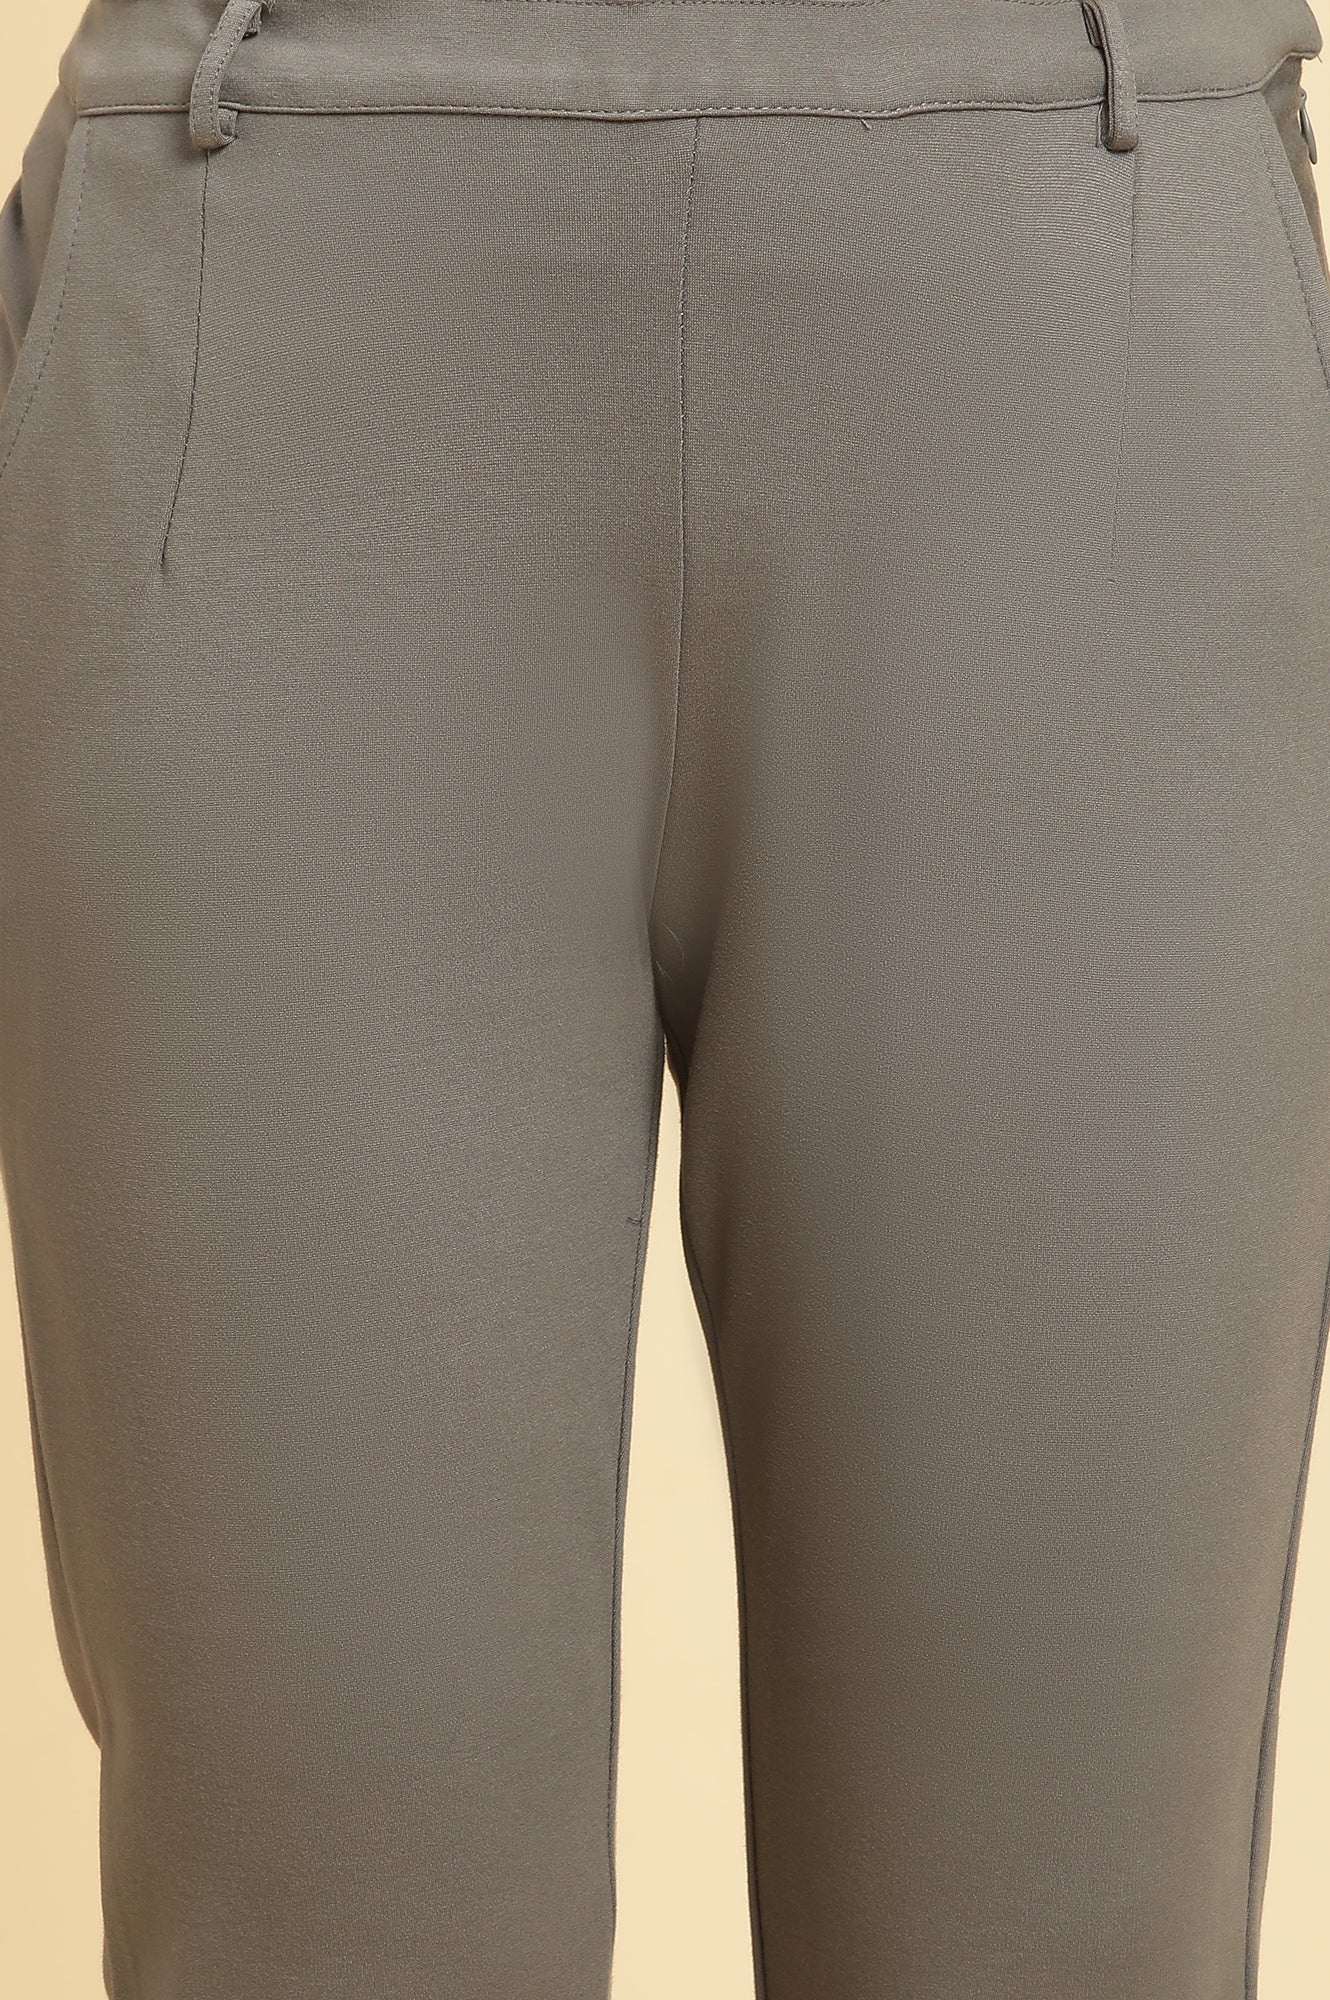 Grey Slim Fit Elasticated Western Pants